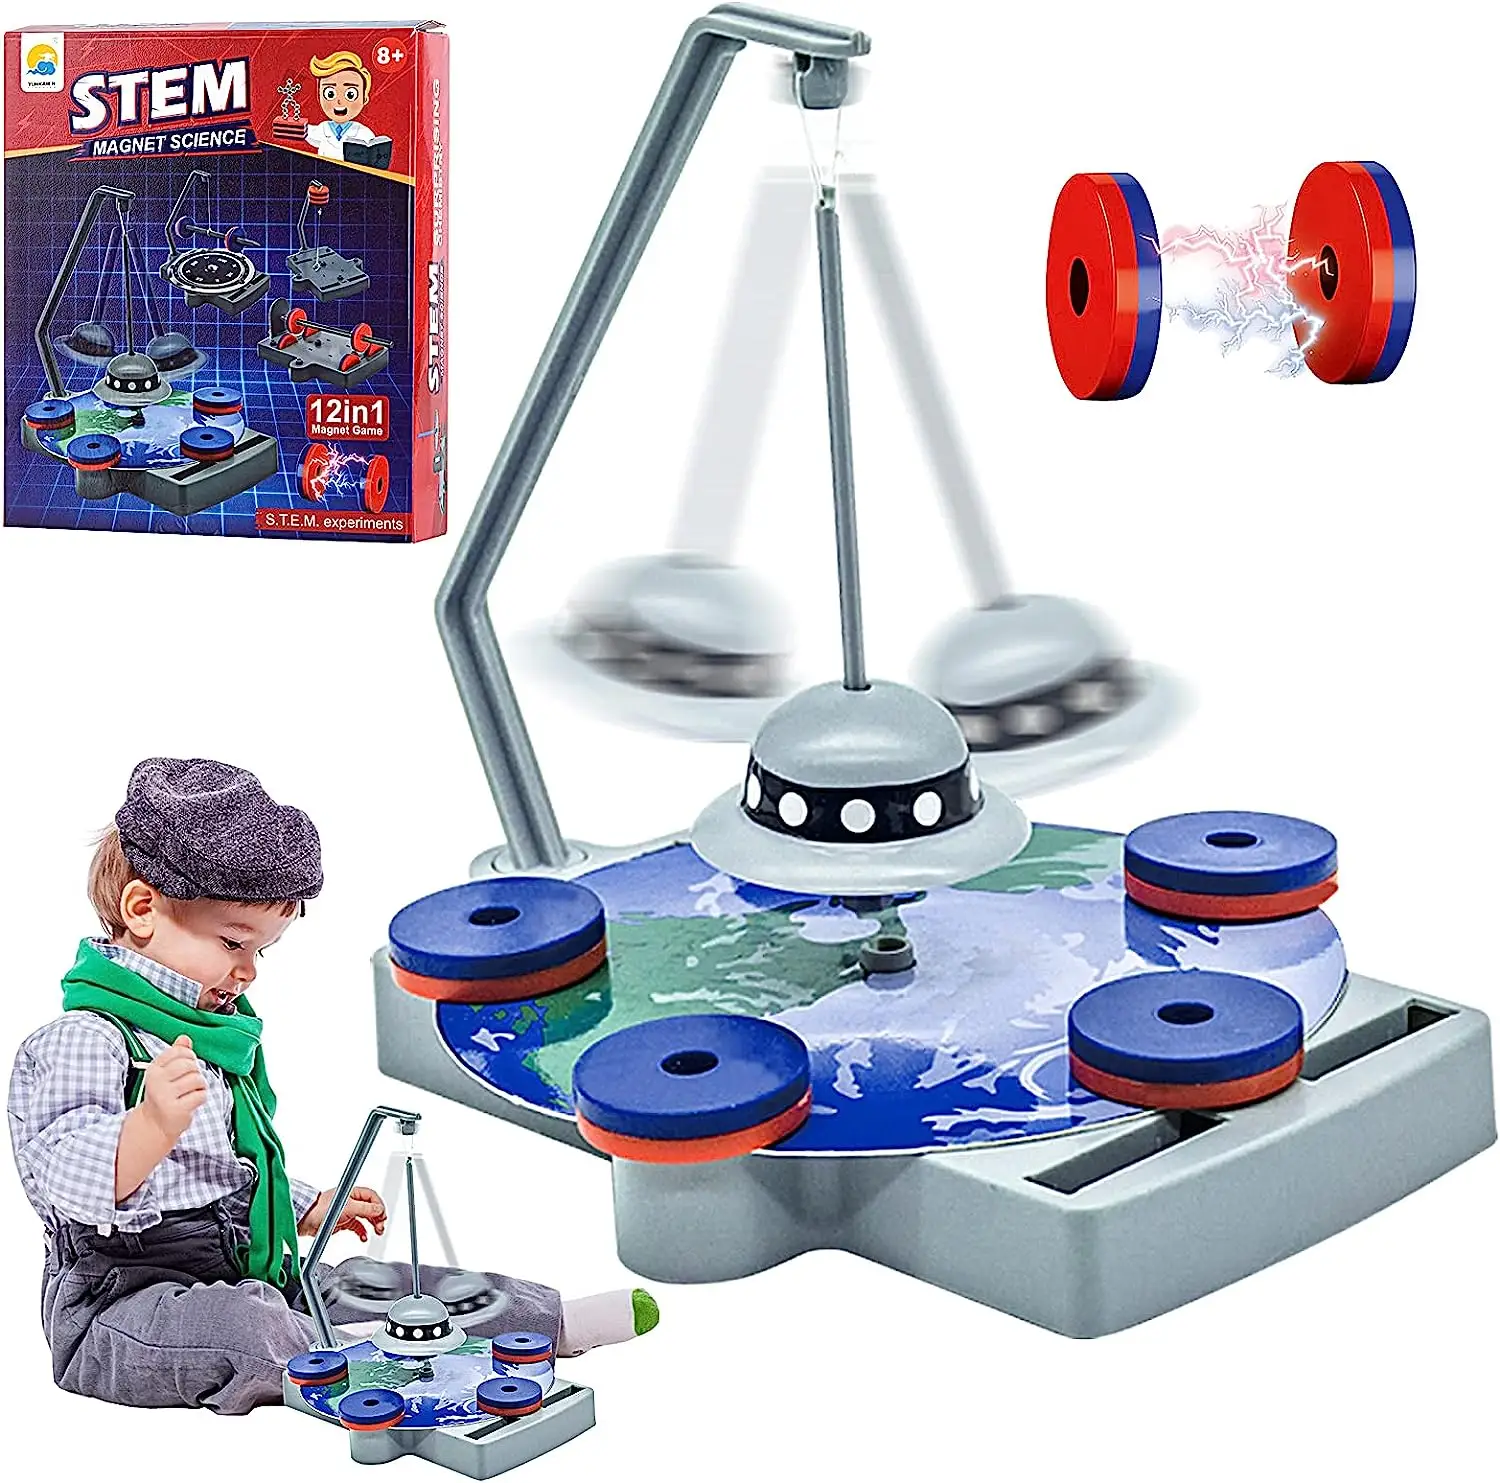 ของเล่นวิทยาศาสตร์12ใน1สำหรับเด็กของเล่นก้านแบบ DIY ของเล่นเพื่อการศึกษาสำหรับเด็กการทดลองวิทยาศาสตร์แม่เหล็ก